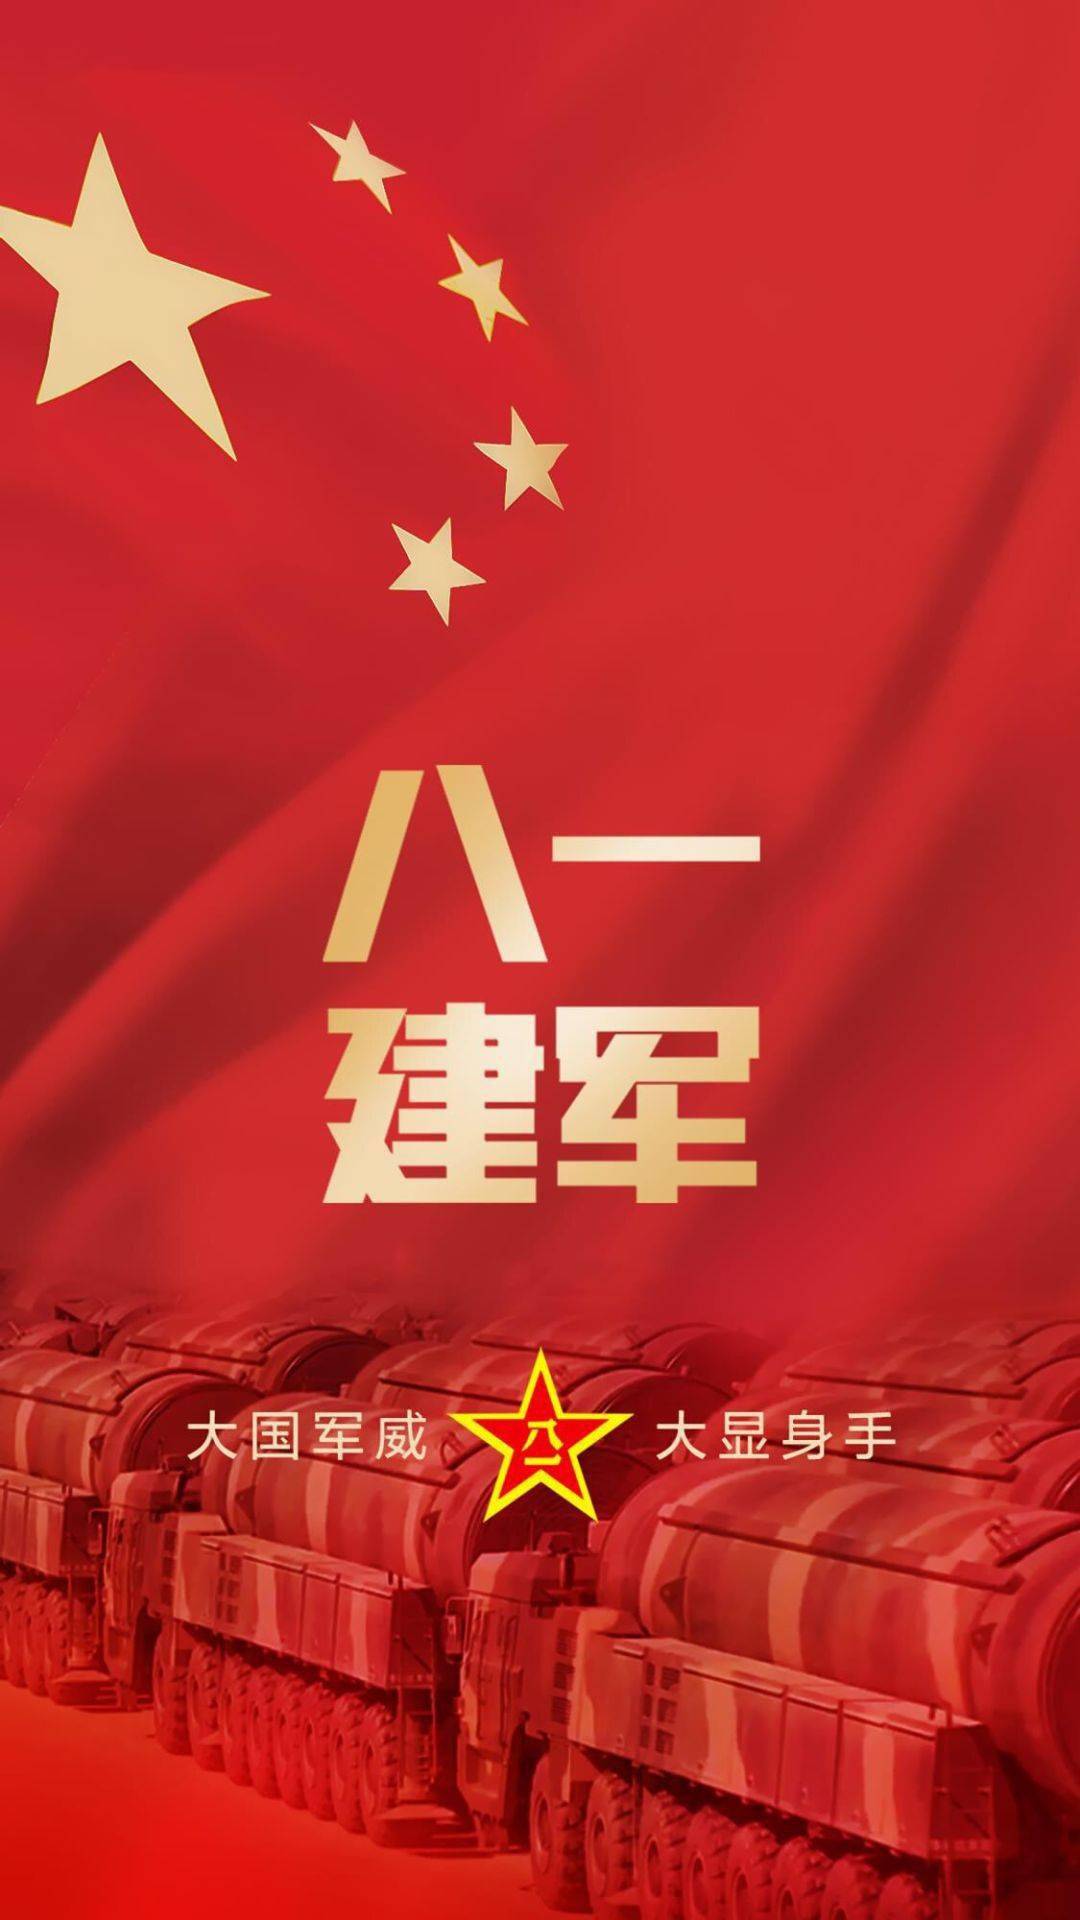 手机壁纸|超燃八一建军节壁纸,致敬中国人民解放军